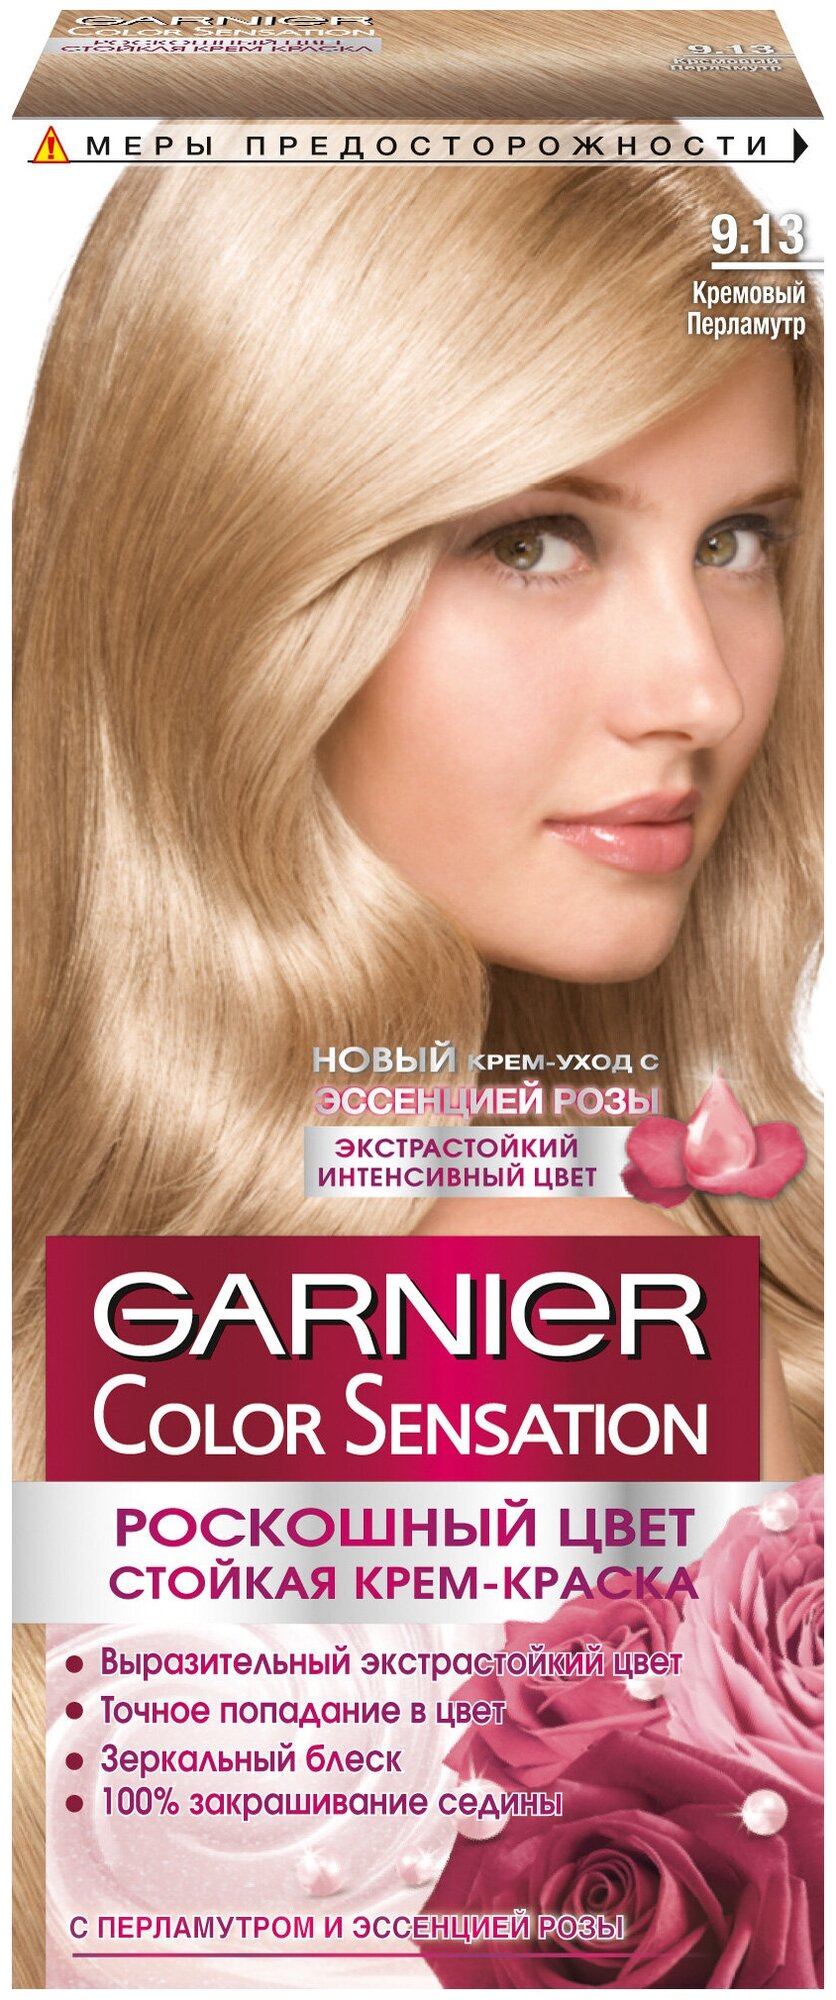 GARNIER Color Sensation стойкая крем-краска для волос, 9.13 кремовый перламутр, 110 мл